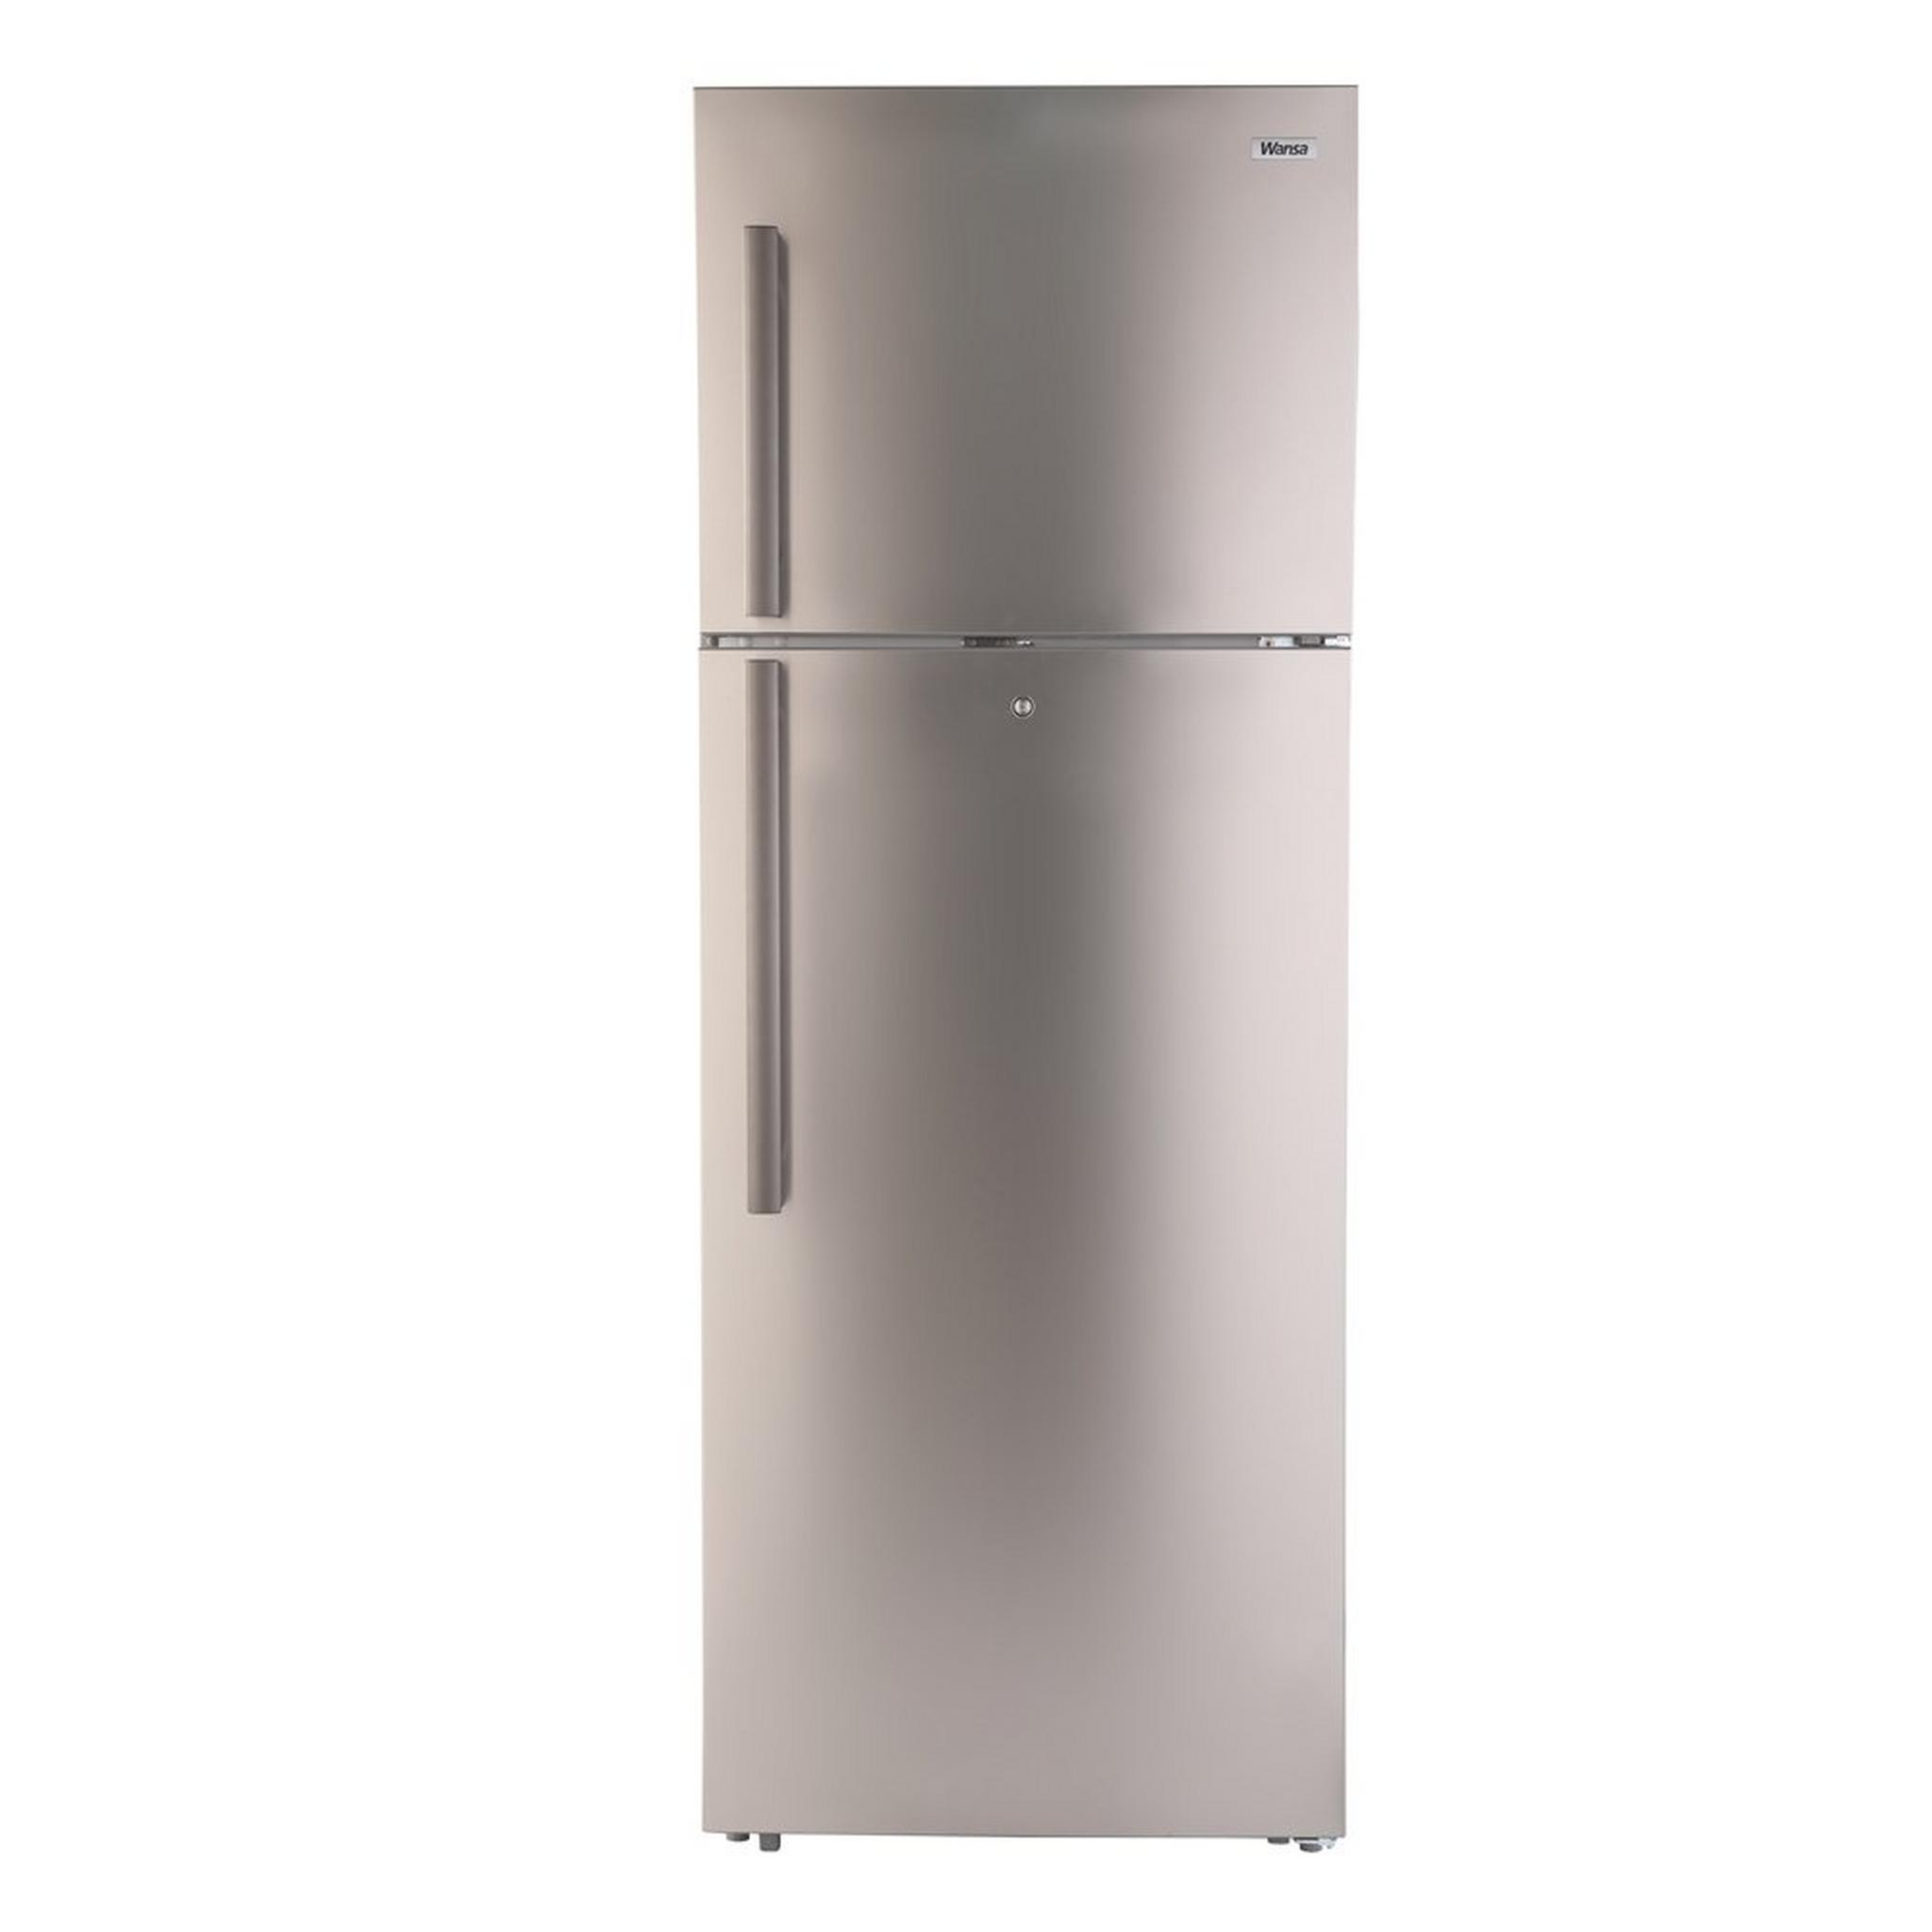 Wansa 22 CFT Top Mount Refrigerator (WRT-624-NFSSC62) - Stainless Steel